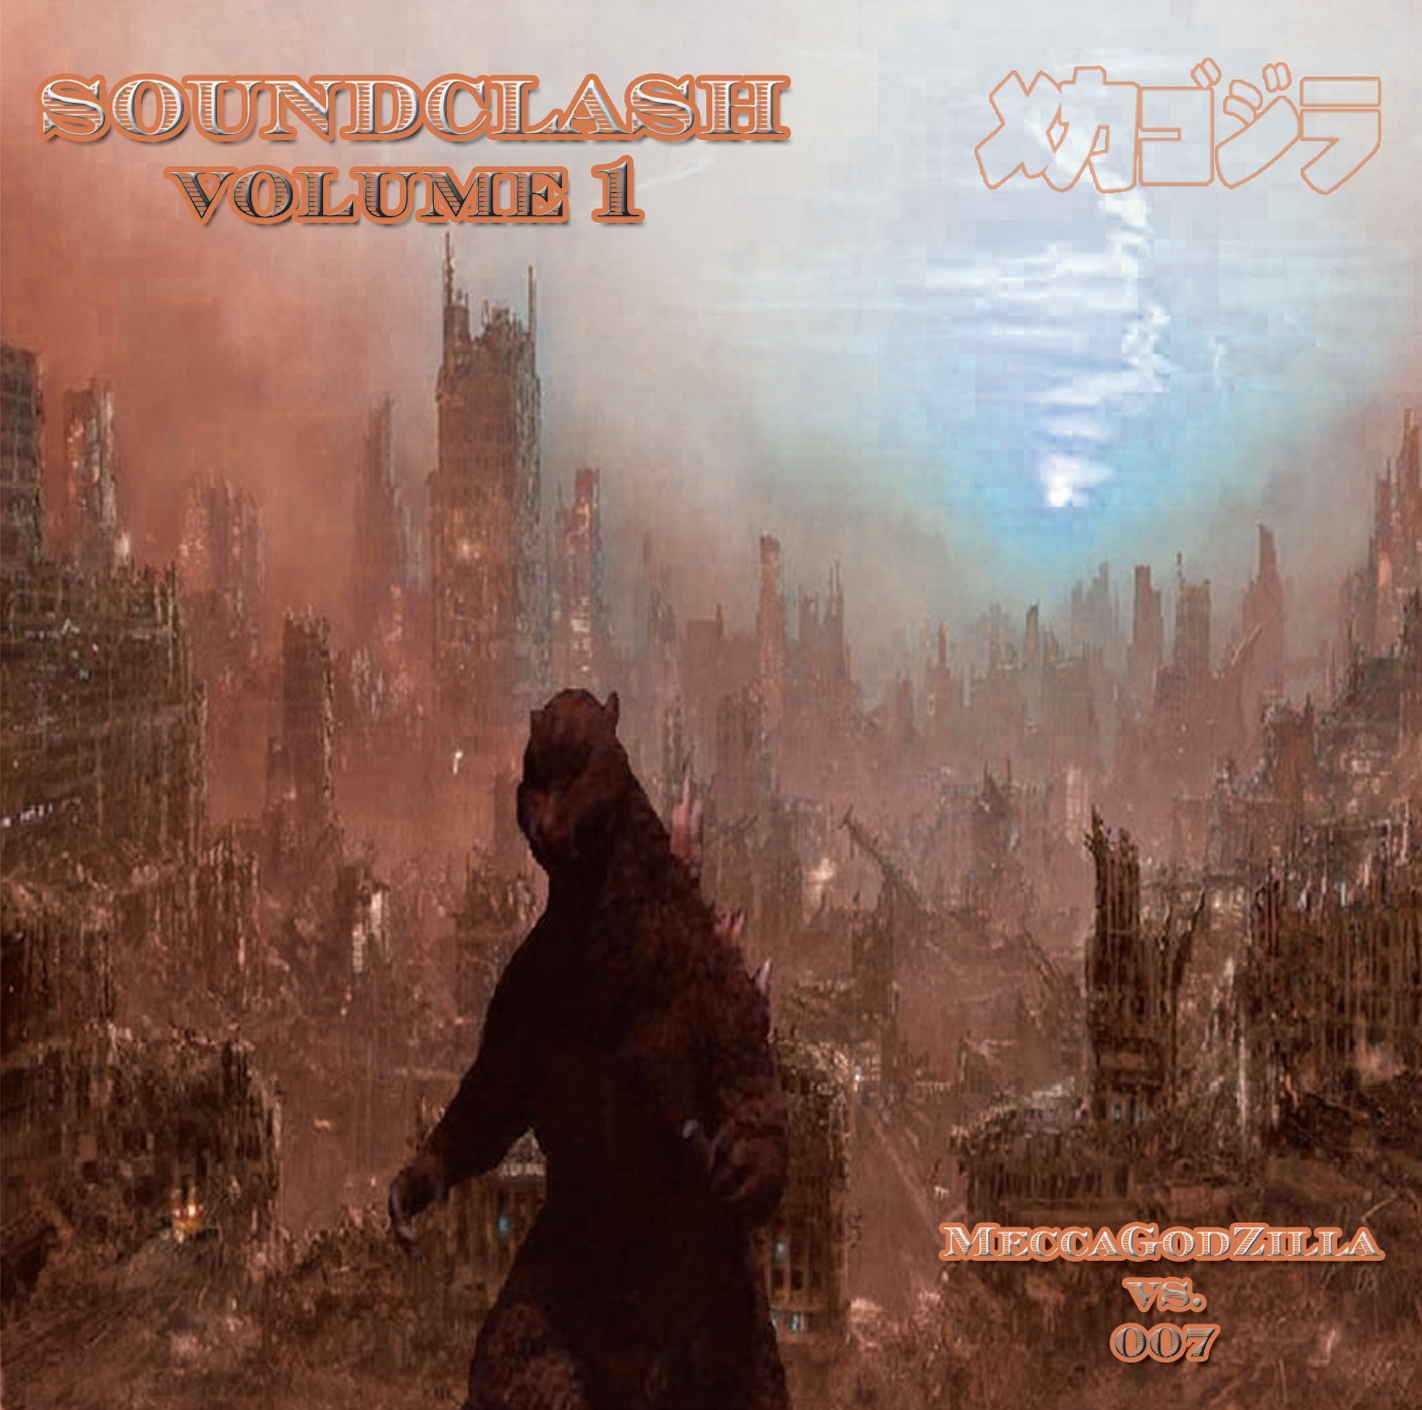 Soundclash Vol 1 – MeccaGodZilla vs 007 CD